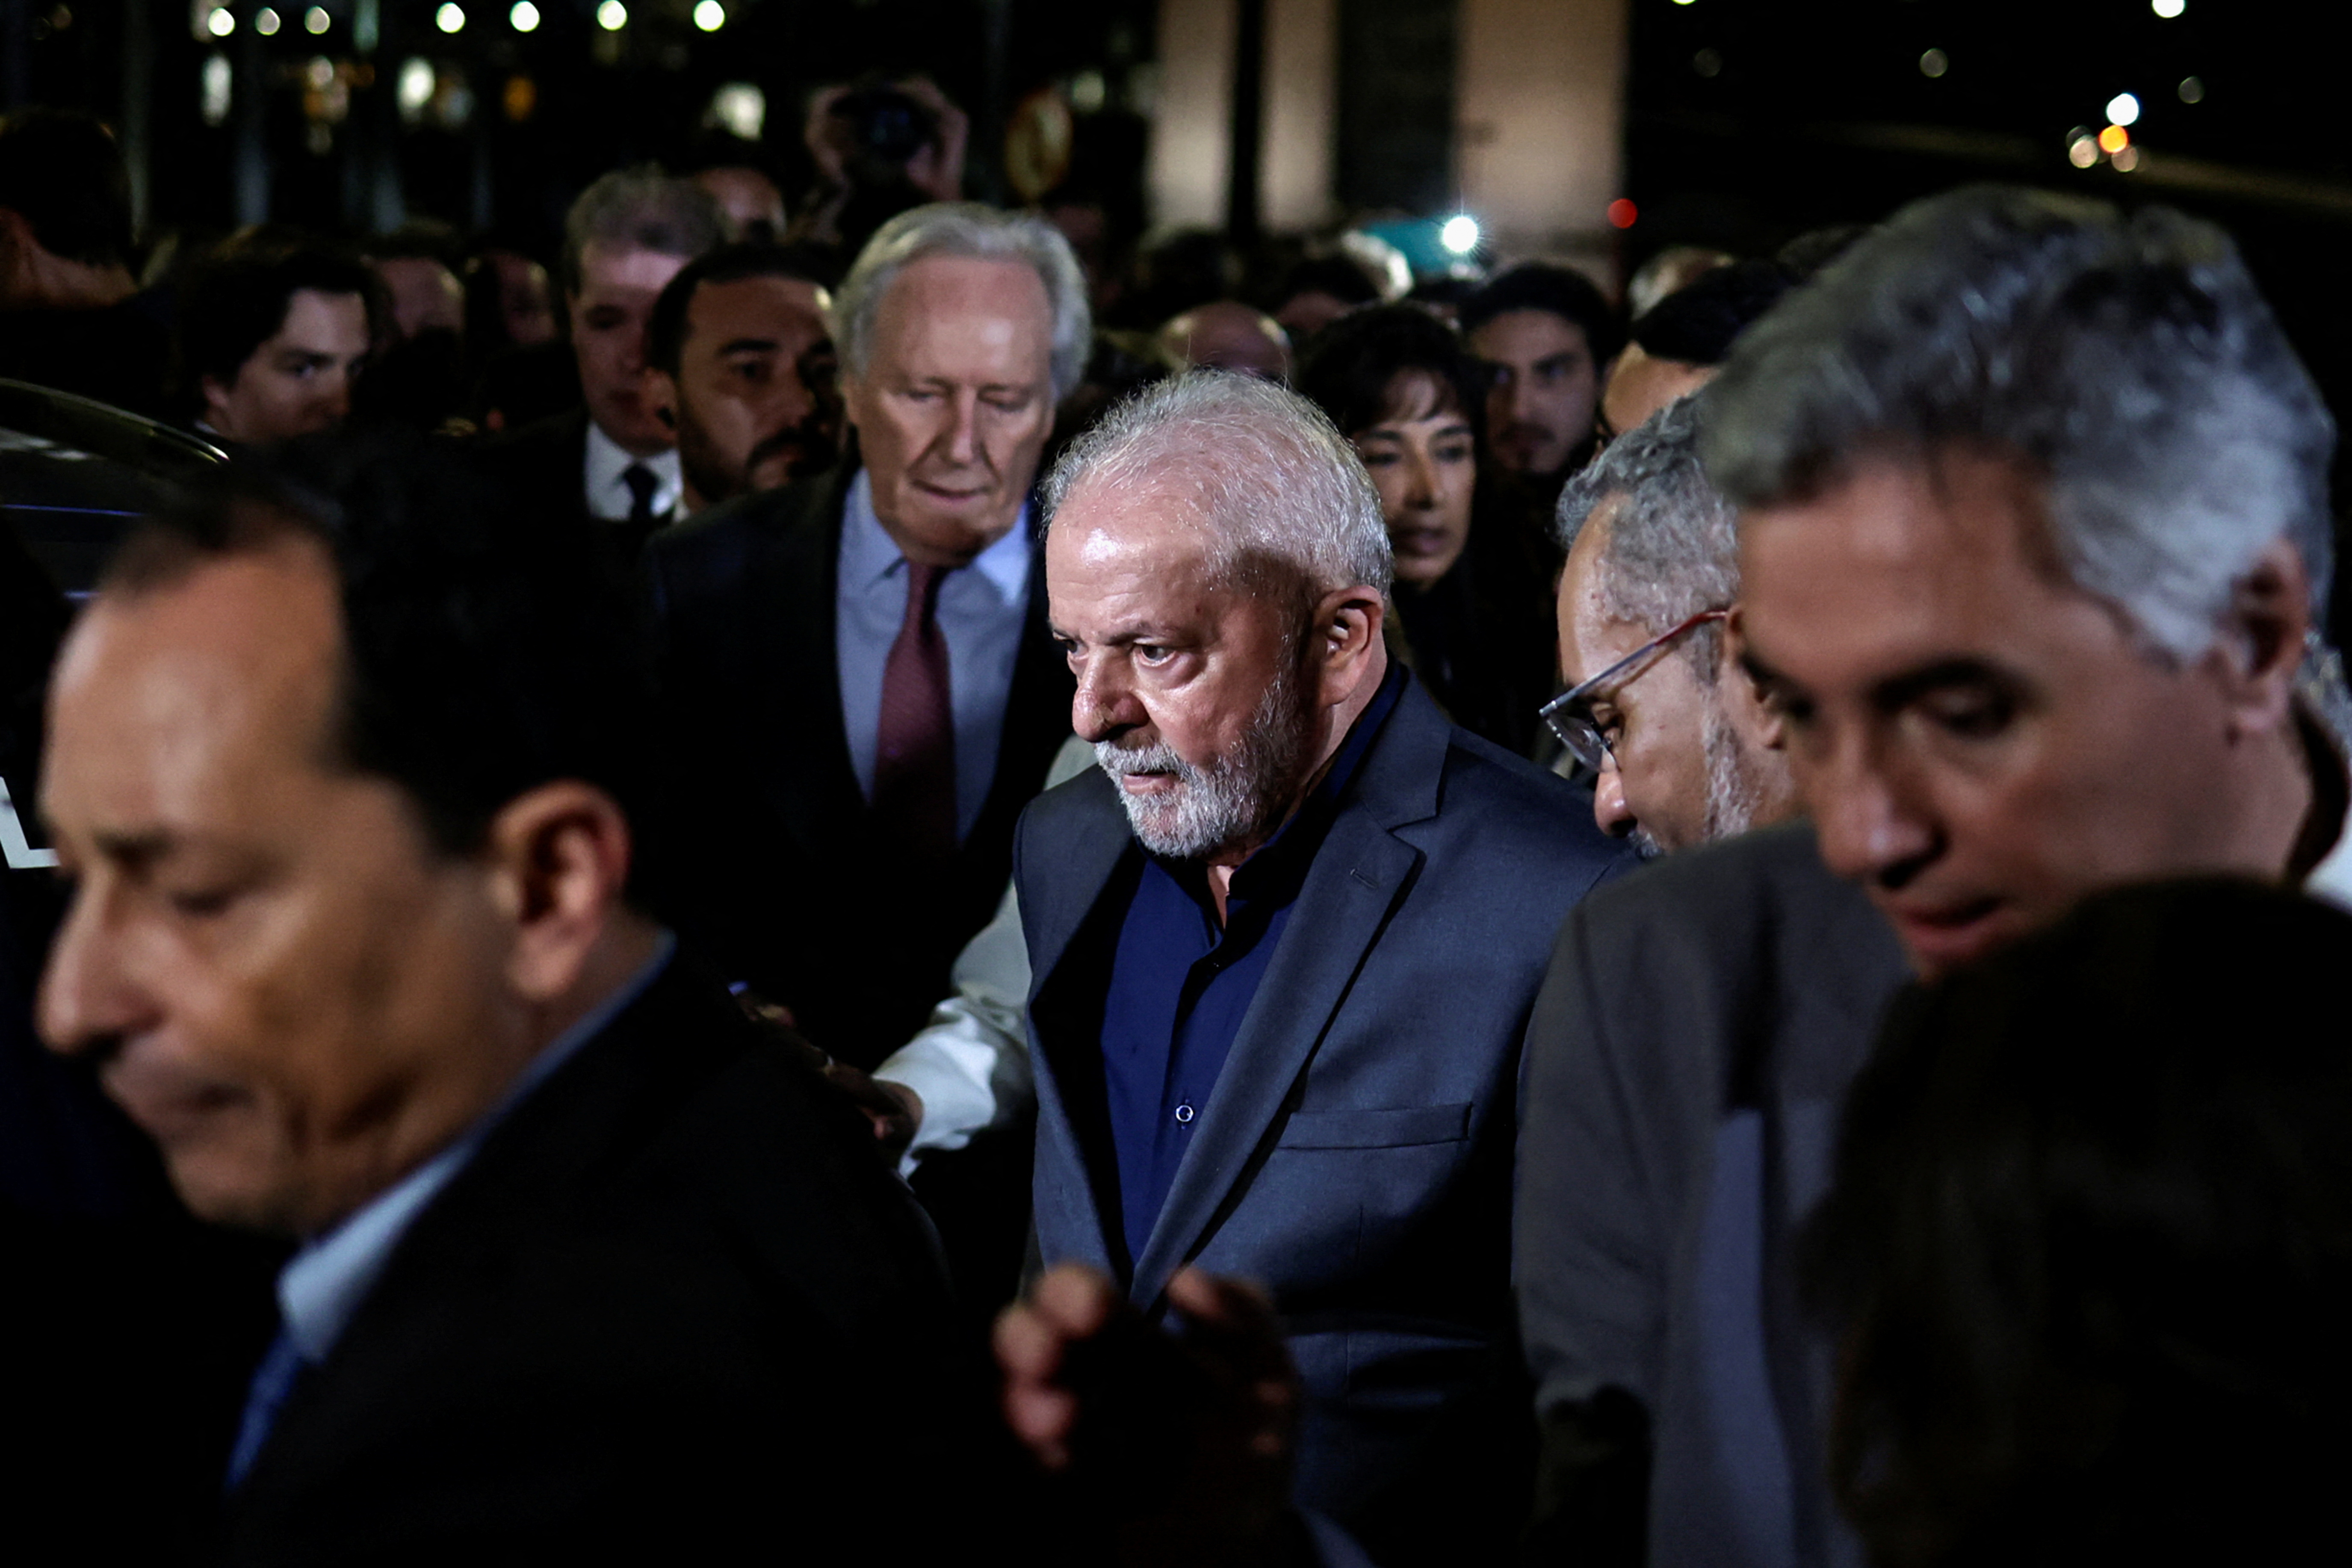 El presidente izquierdista Luiz Inácio Lula da Silva derrotó por poco a Bolsonaro, quien hizo denuncias infundadas de los comicios fueron fraudulentos (REUTERS/Ueslei Marcelino)